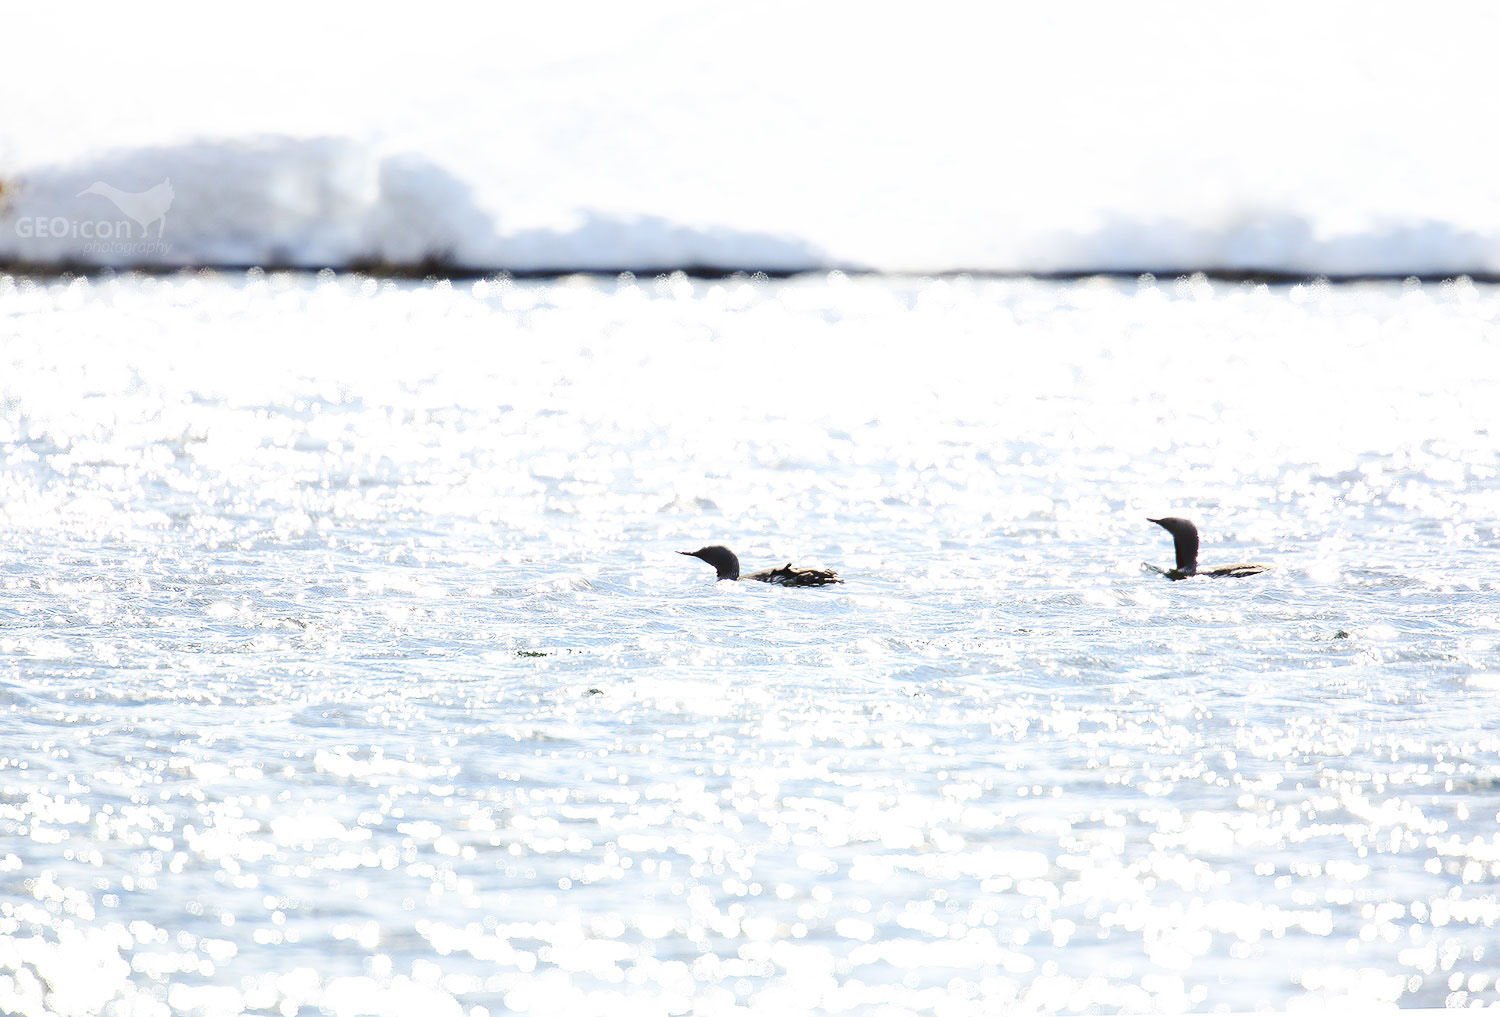 Black throated loon / potáplice severní (Gavia arctica)